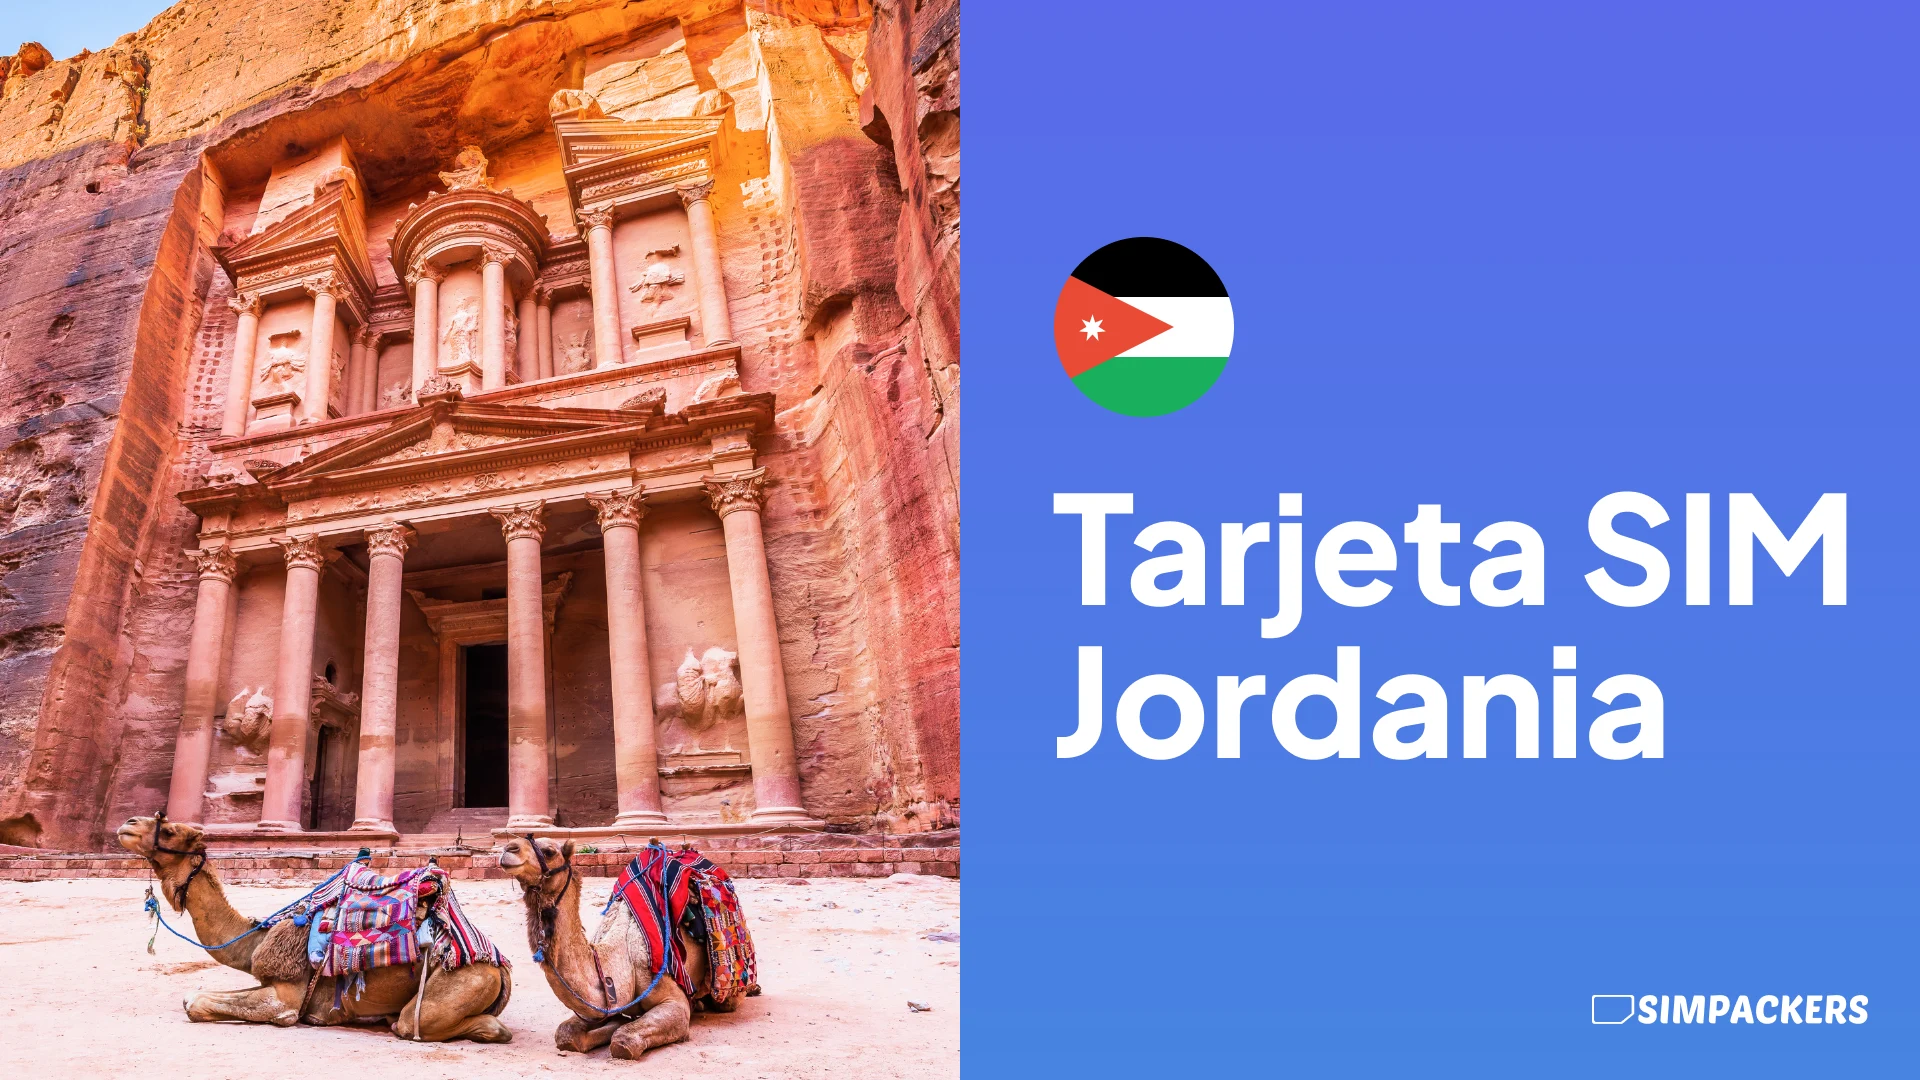 ES/FEATURED_IMAGES/tarjeta-sim-jordania.webp